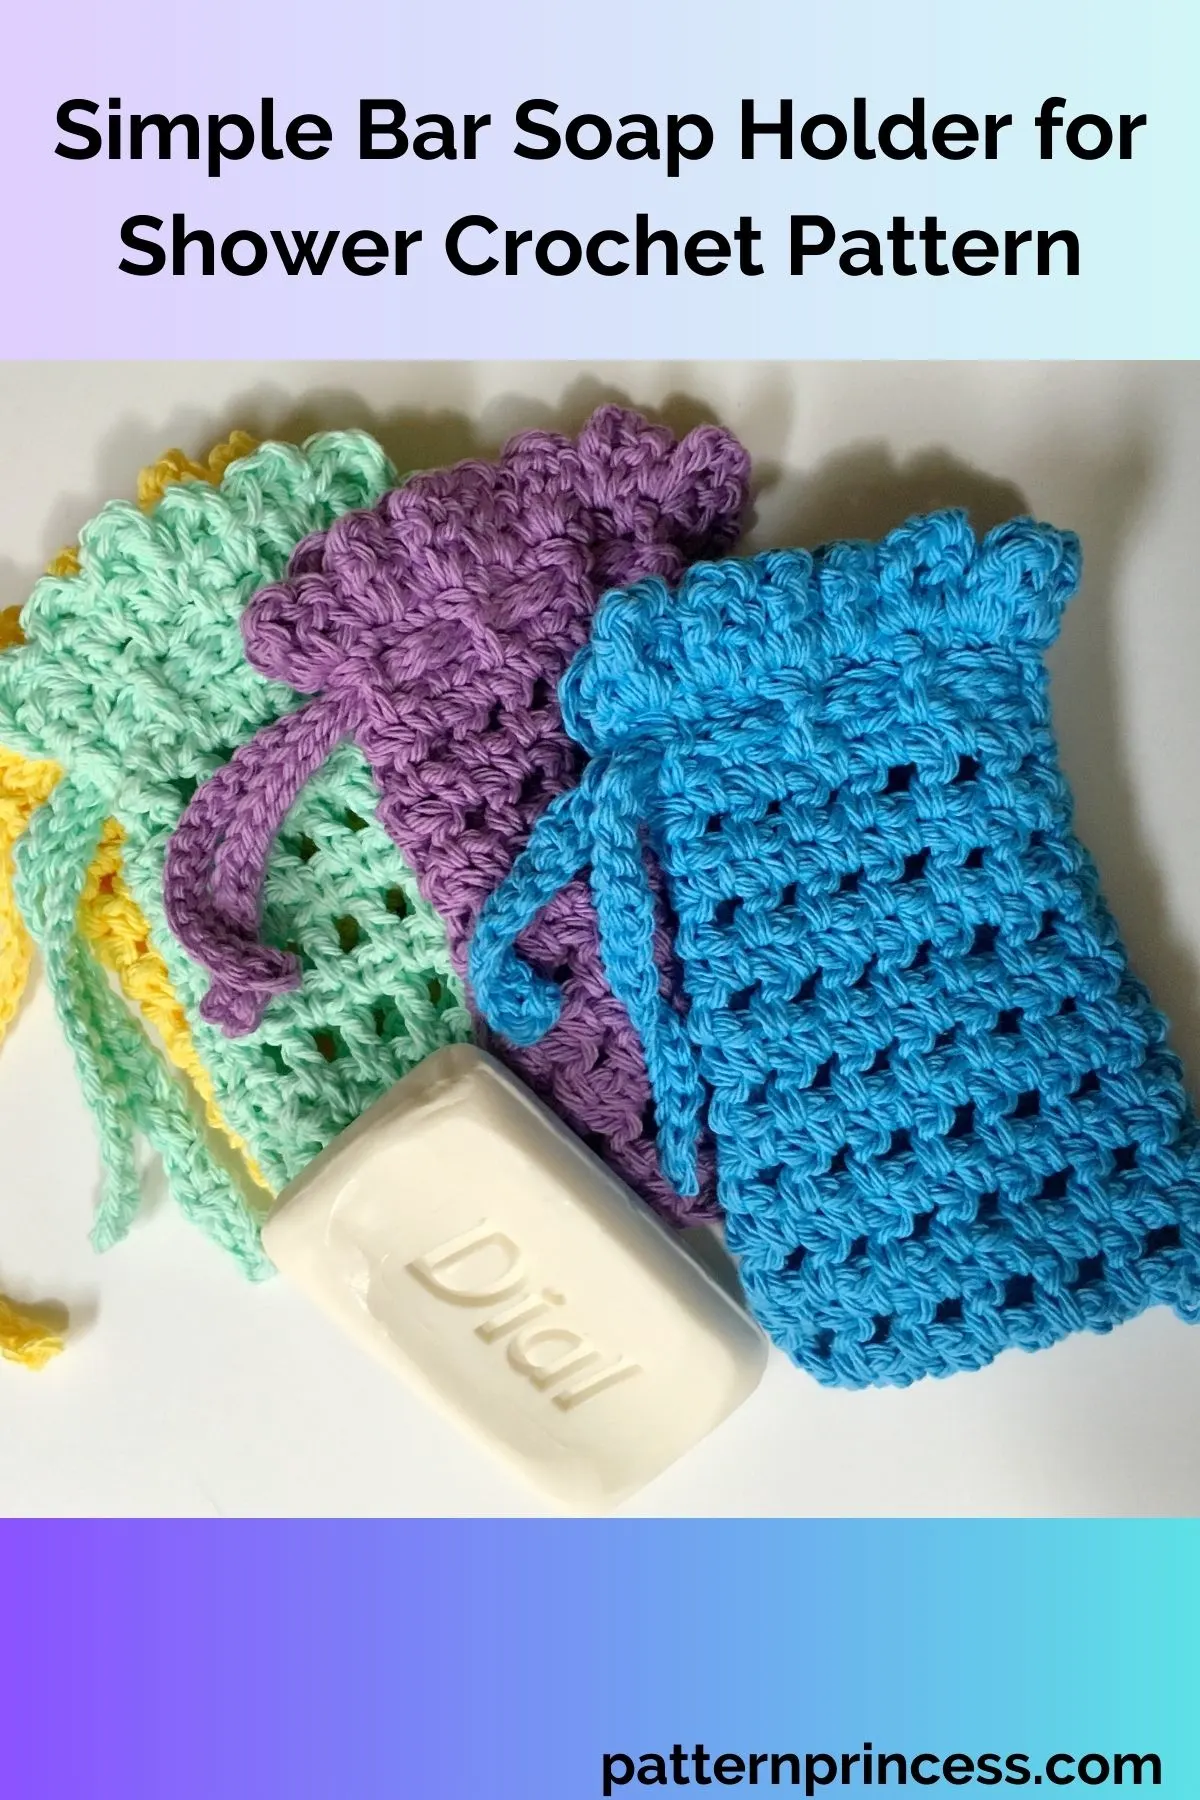 Simple Bar Soap Holder for Shower Crochet Pattern